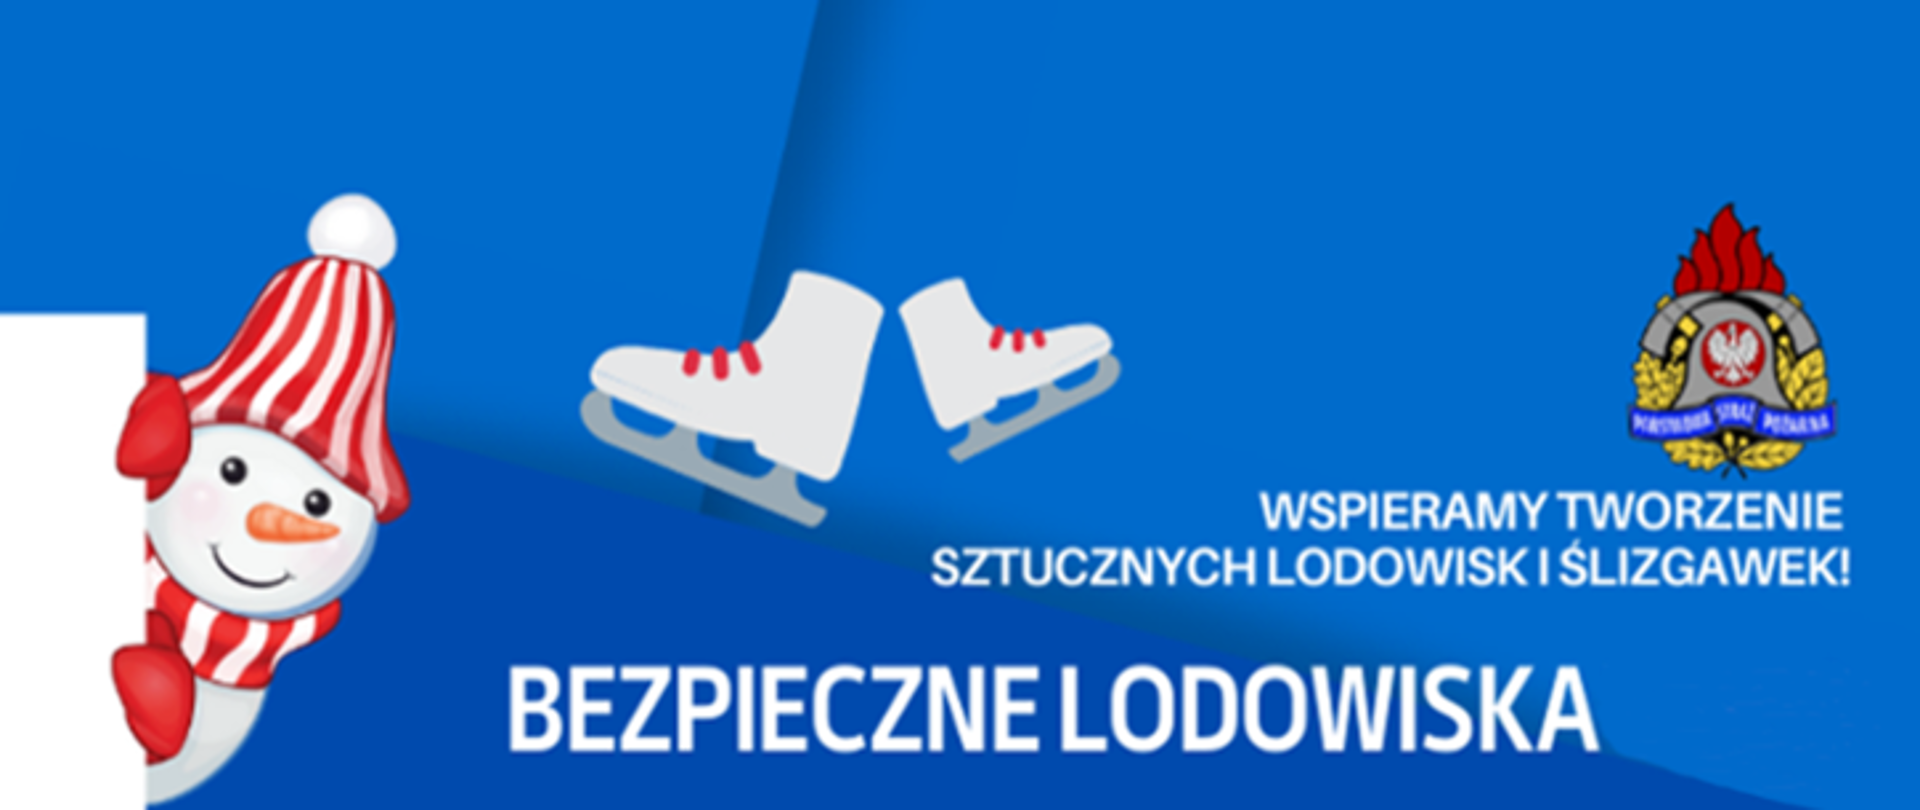 Logo akcji bezpieczne lodowiska